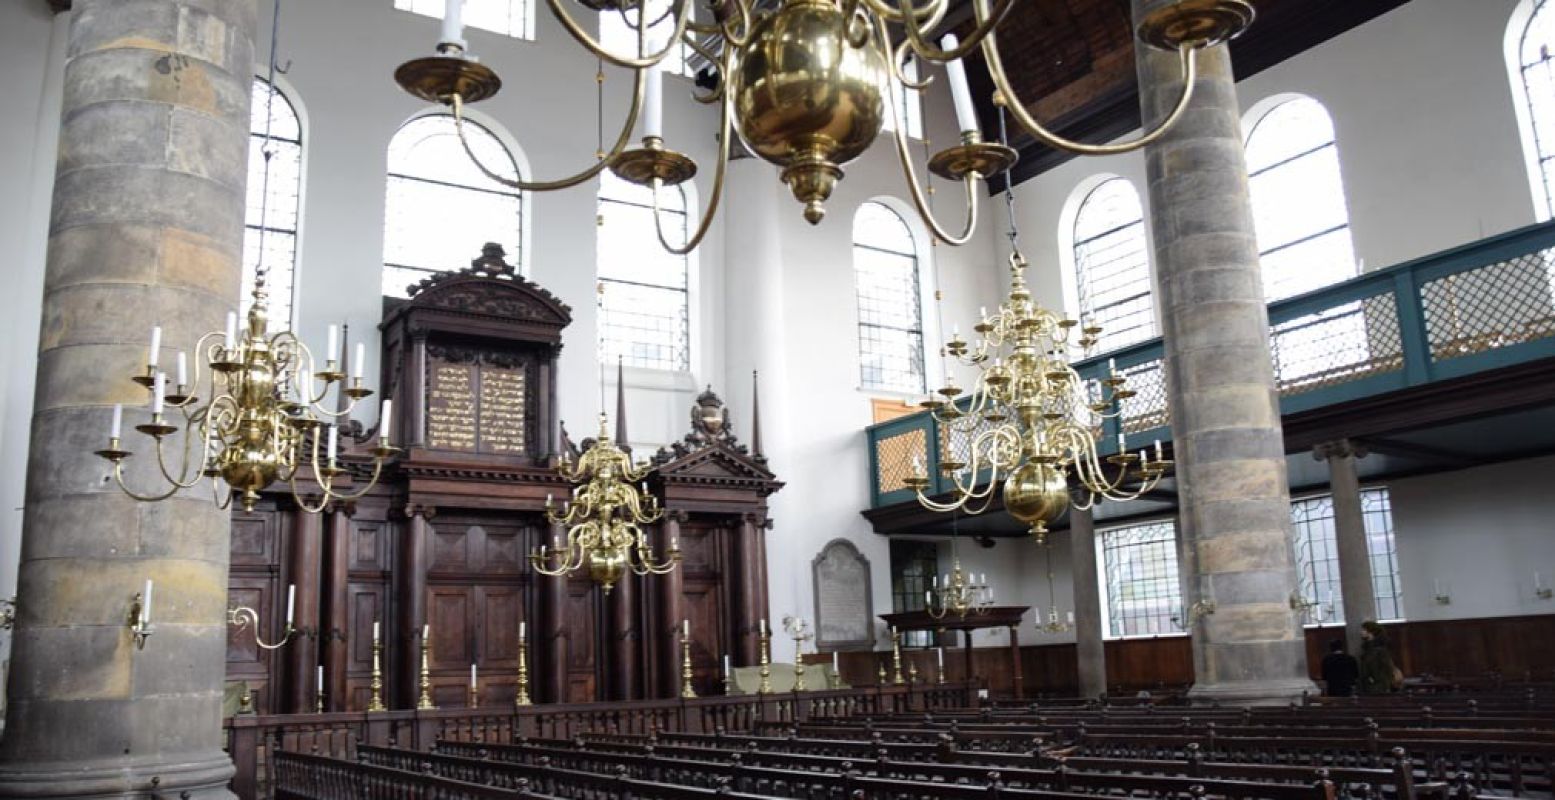 Je kunt een speld horen vallen in de Portugese Synagoge. Foto: Redactie DagjeWeg.NL, Eline Visscher.